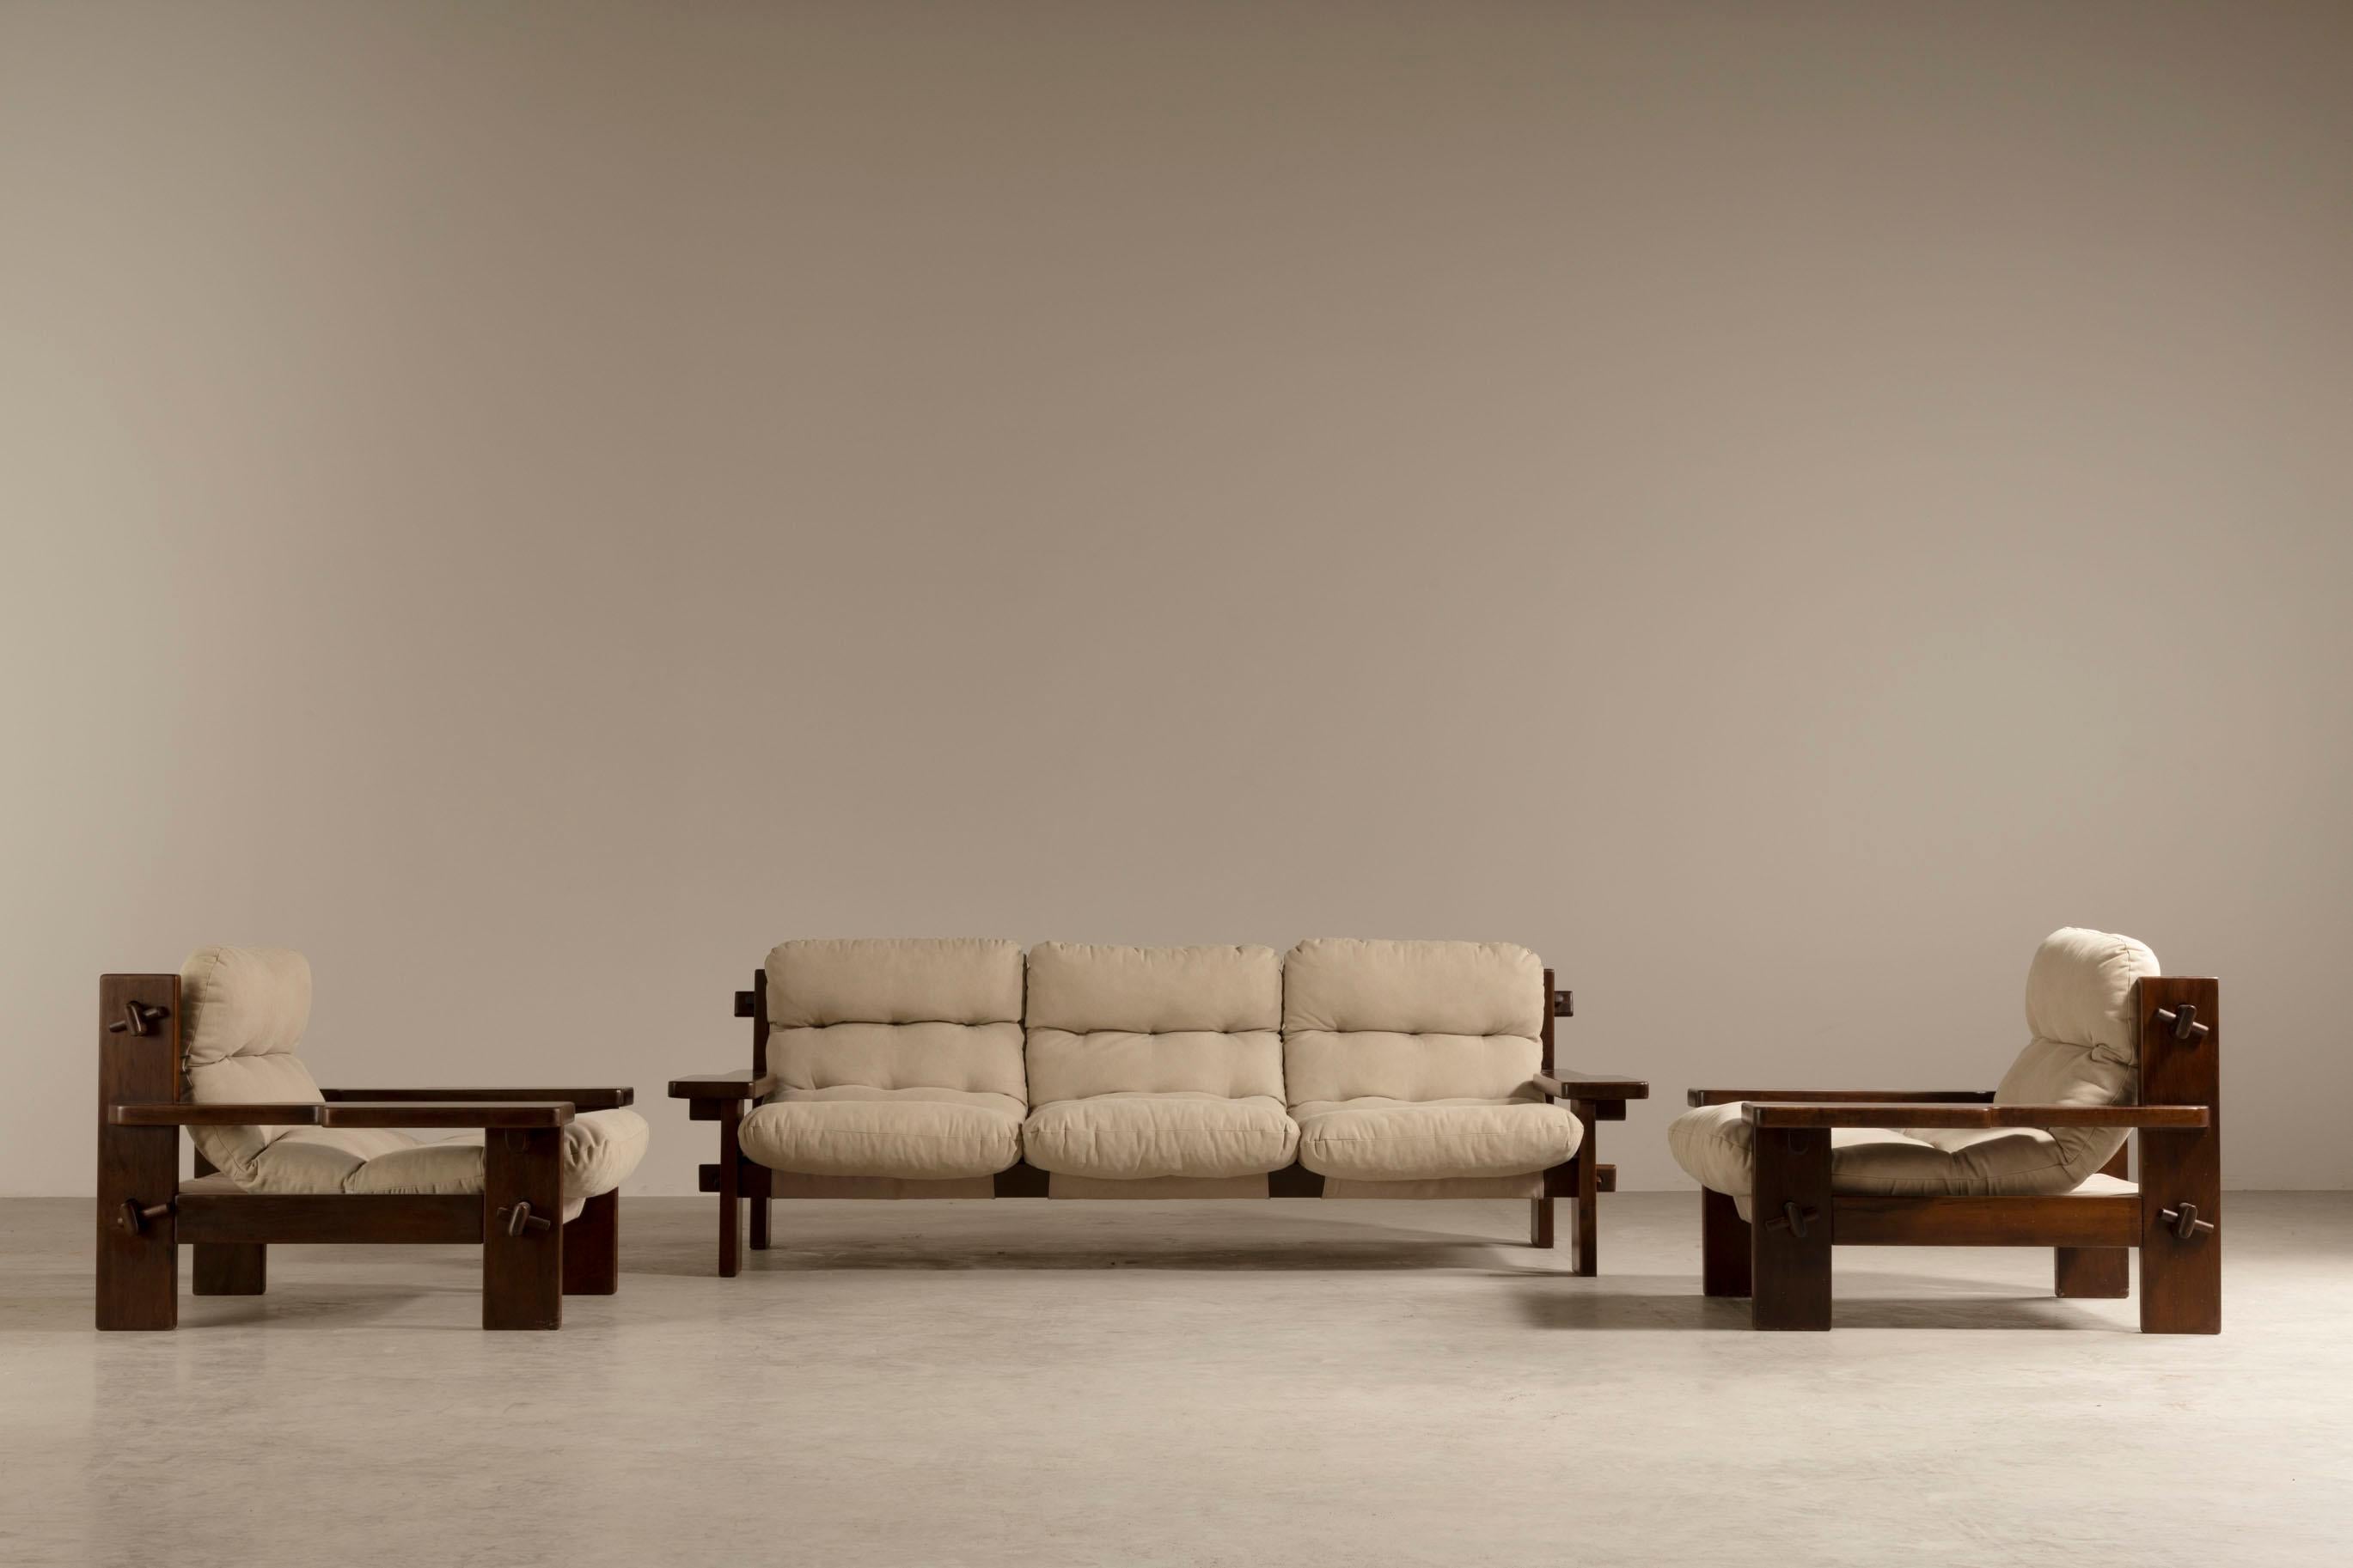 Cette paire de fauteuils, créée par le célèbre designer Jean Gillon, est une pièce unique qui intègre l'élégance et la qualité dans son design. Nés dans les années 1960 et développés pour Probel, ces fauteuils font partie du même ensemble que le